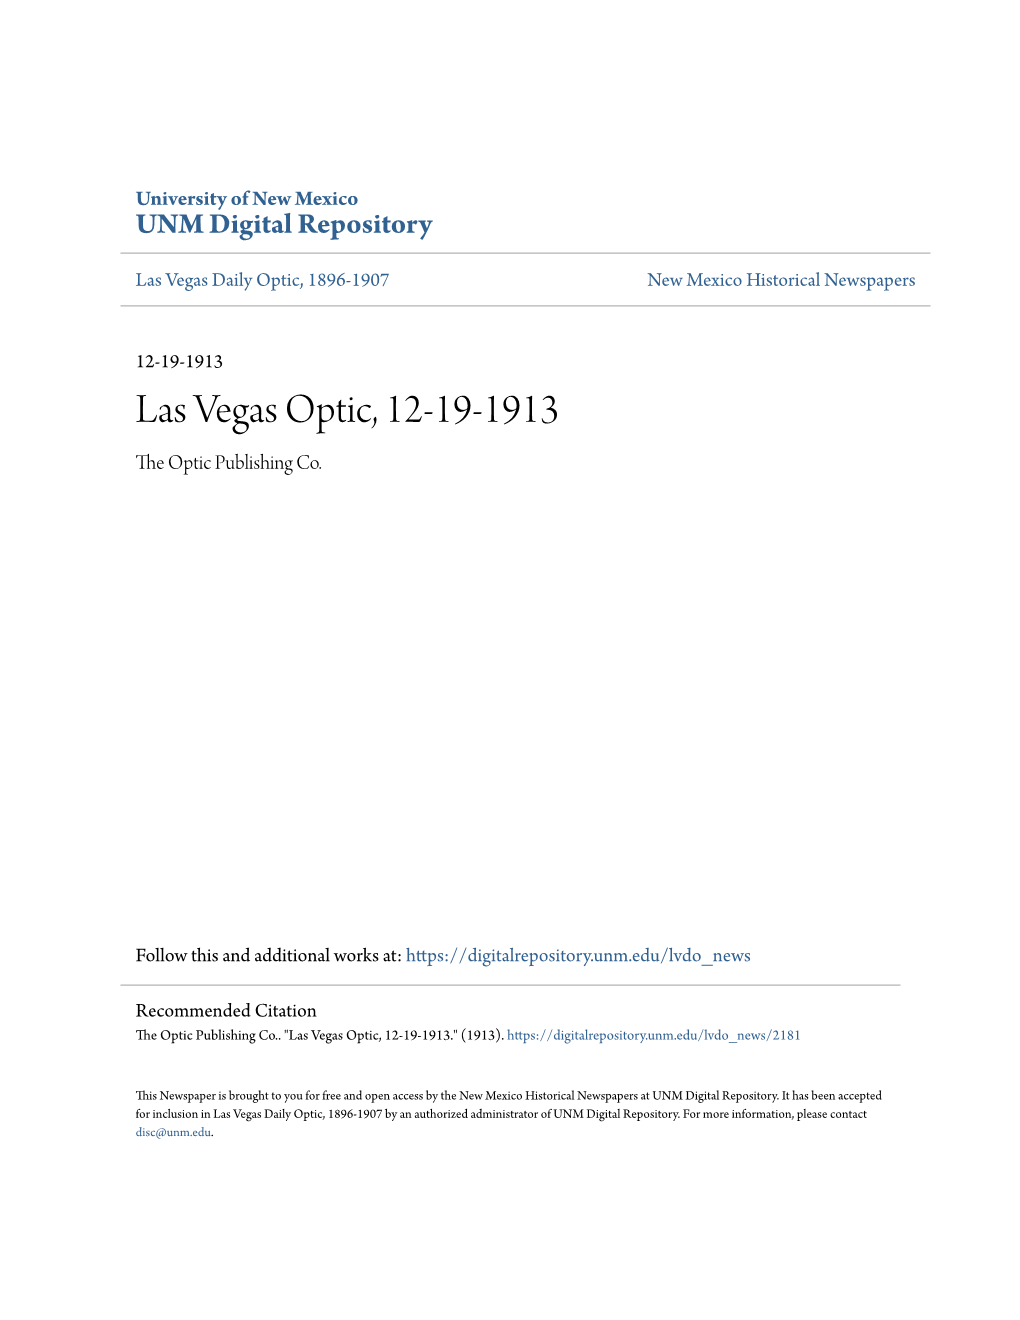 Las Vegas Optic, 12-19-1913 the Optic Publishing Co